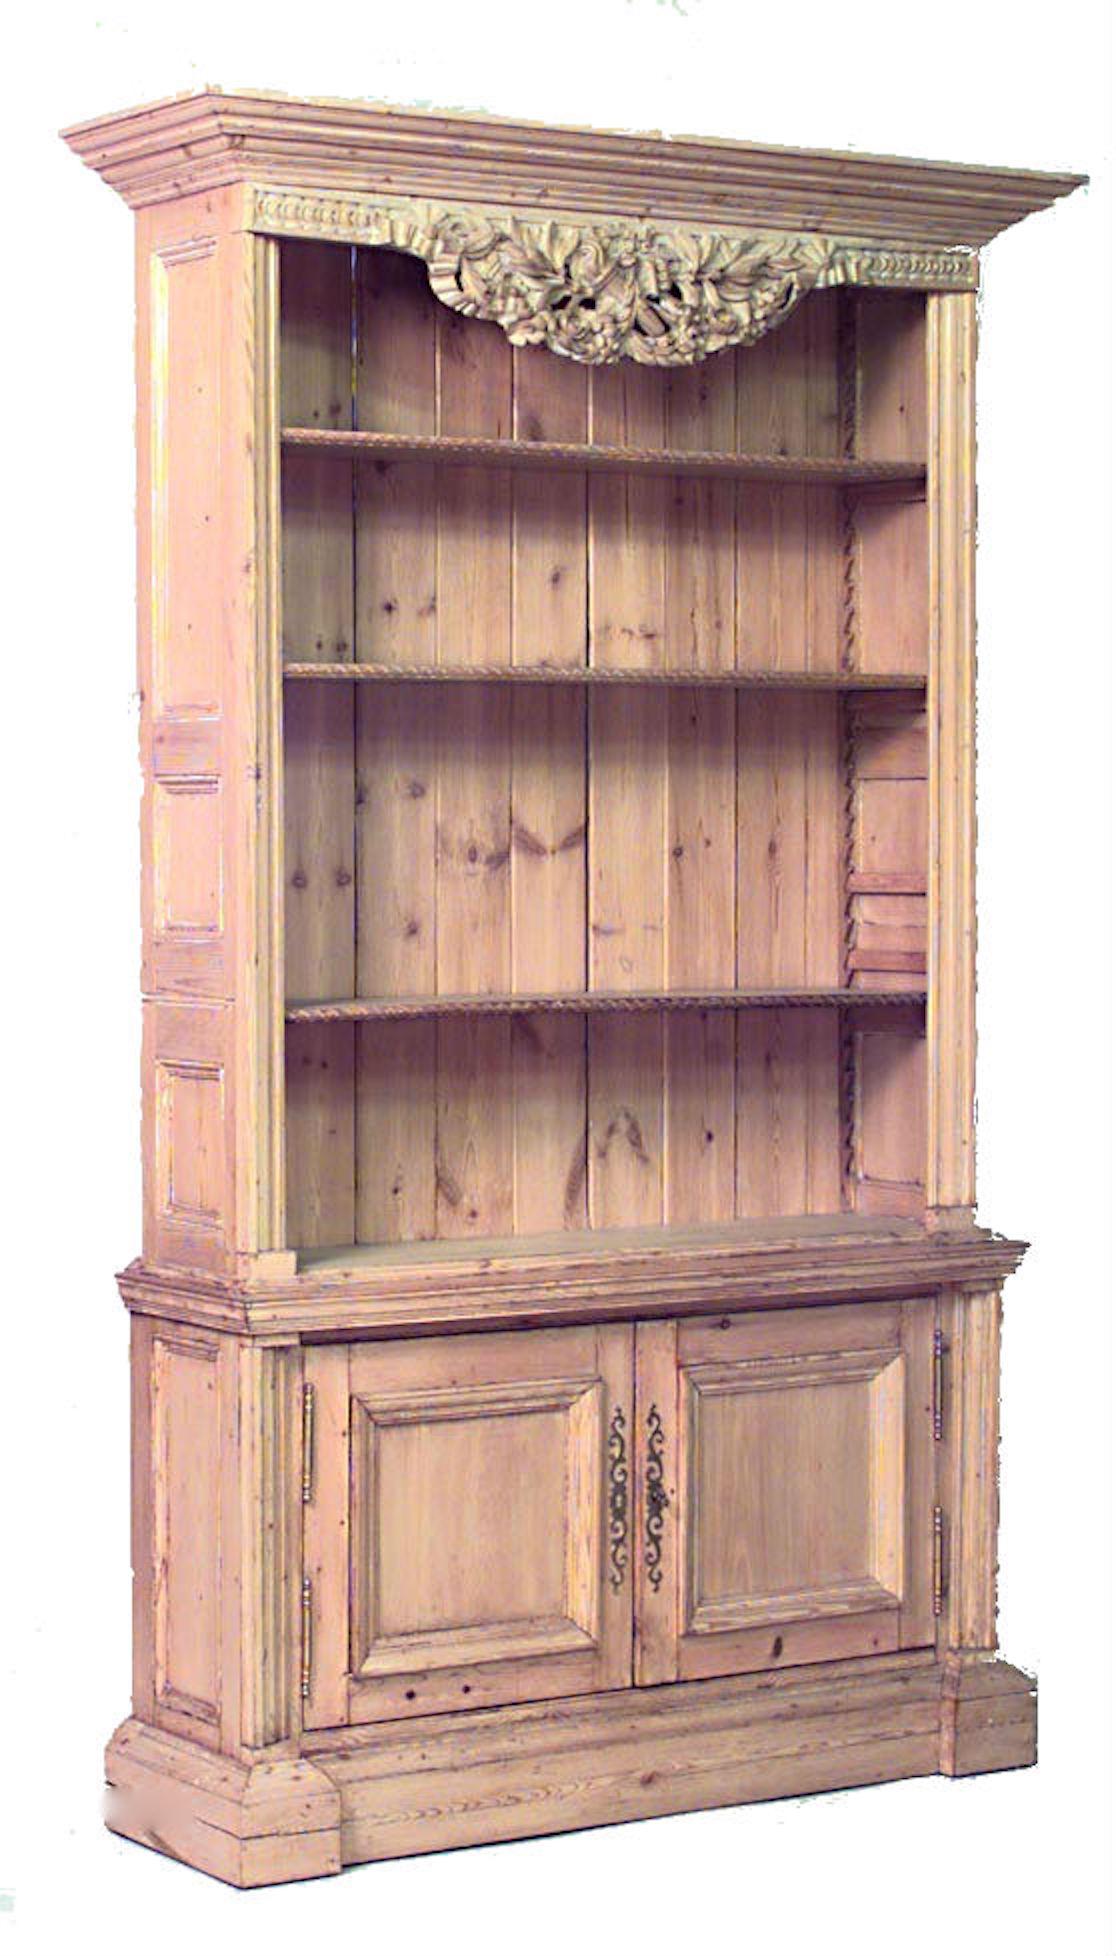 Paire d'armoires de bibliothèque en pin strié de style campagnard anglais (19/20e siècle) avec étagères ouvertes et 2 portes inférieures avec dessus sculpté de fleurs. (PRIX PAR PAILLE)
